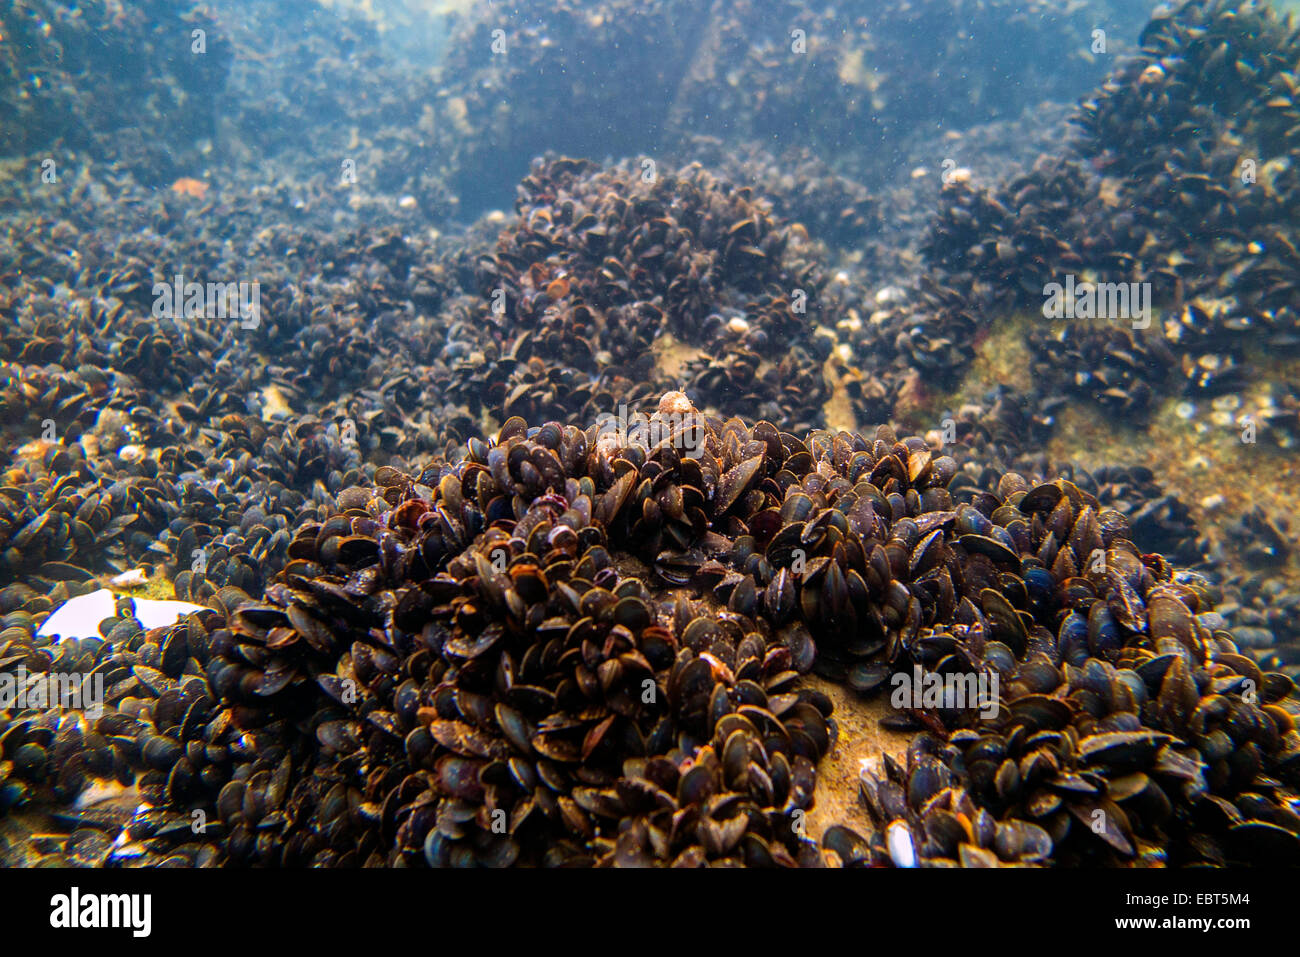 Les moules (Mytiloidea), colonie de moules sous l'eau, de la Norvège, Nordland Banque D'Images